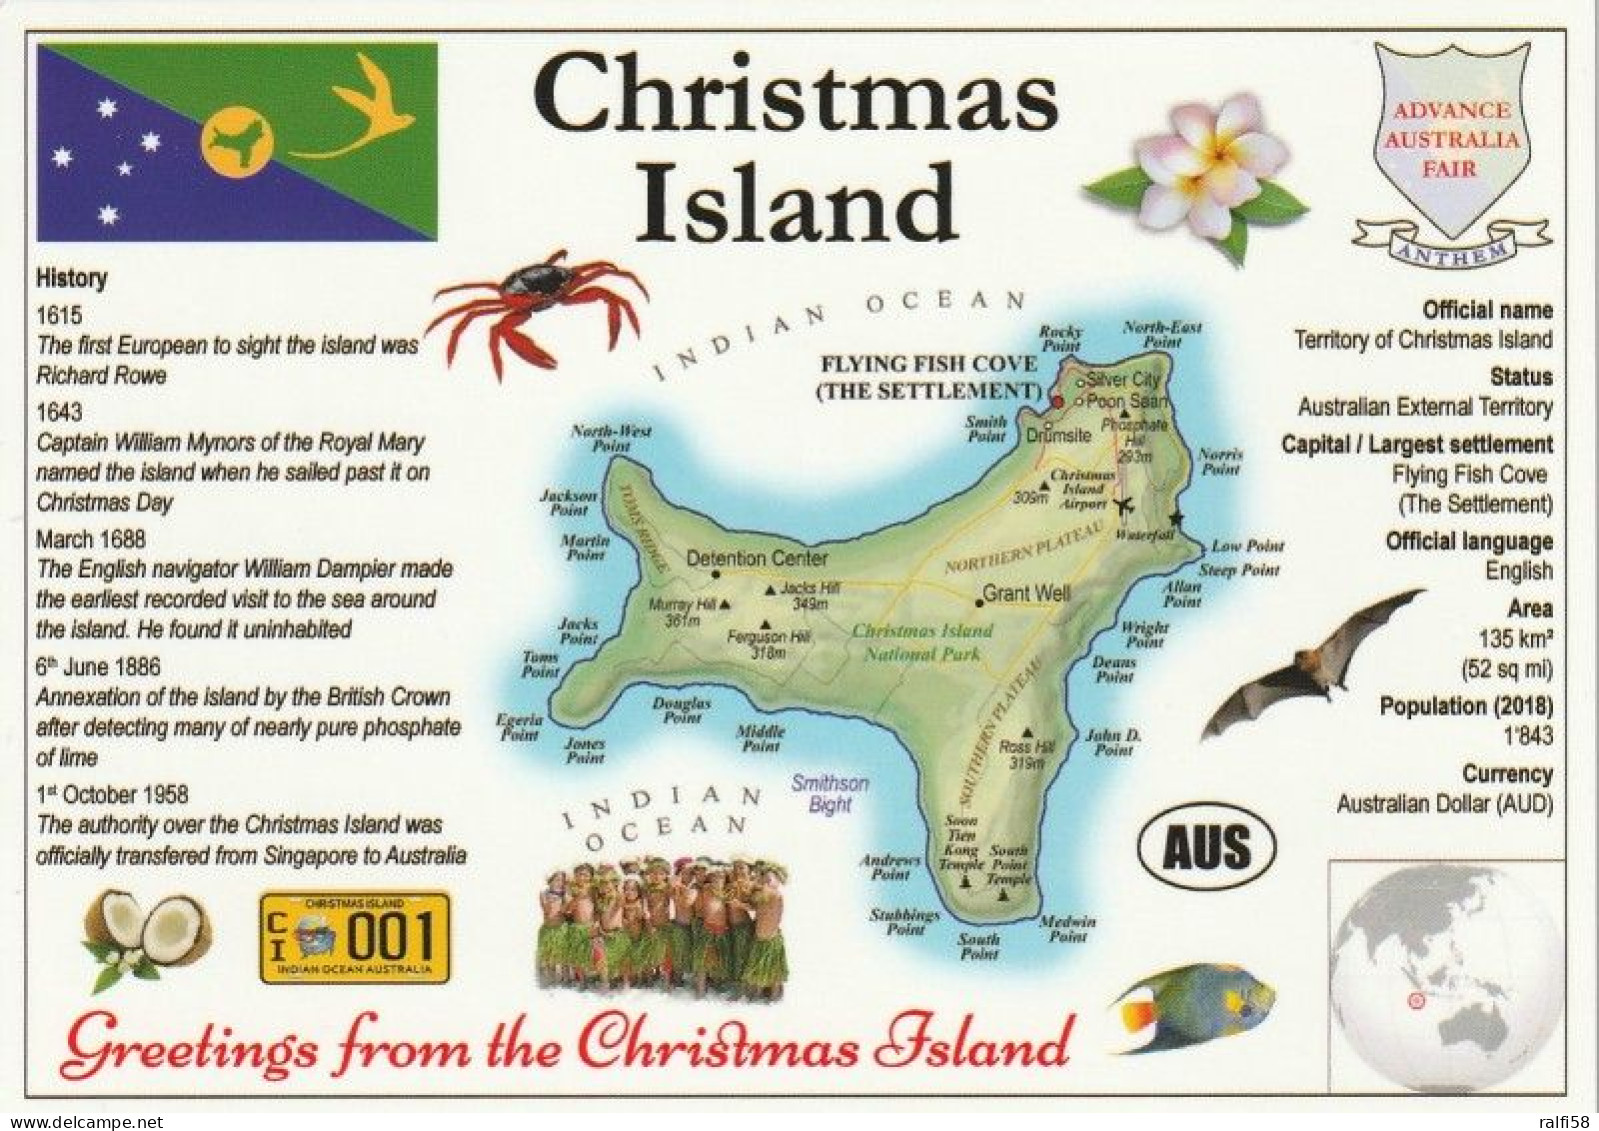 1 Map Of Christmas Island * 1 Landkarte Von Christmas Island Mit Informationen Und Der Flagge Von Christmas Island * - Maps